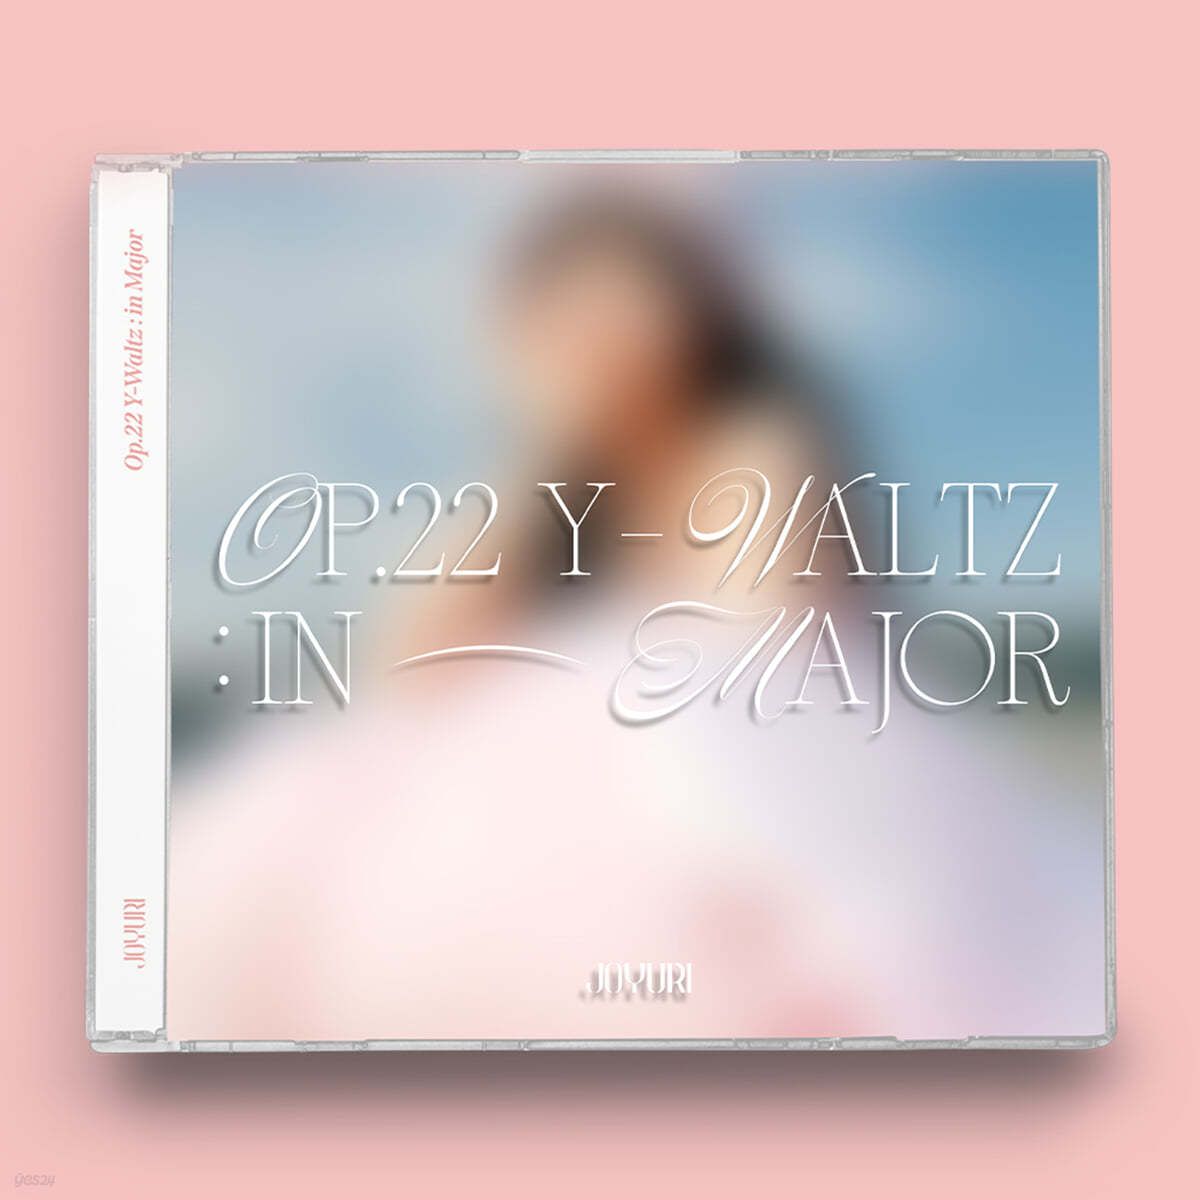 조유리 - 미니앨범 1집 : Op.22 Y-Waltz : in Major [Jewel ver.][Limited Edition]